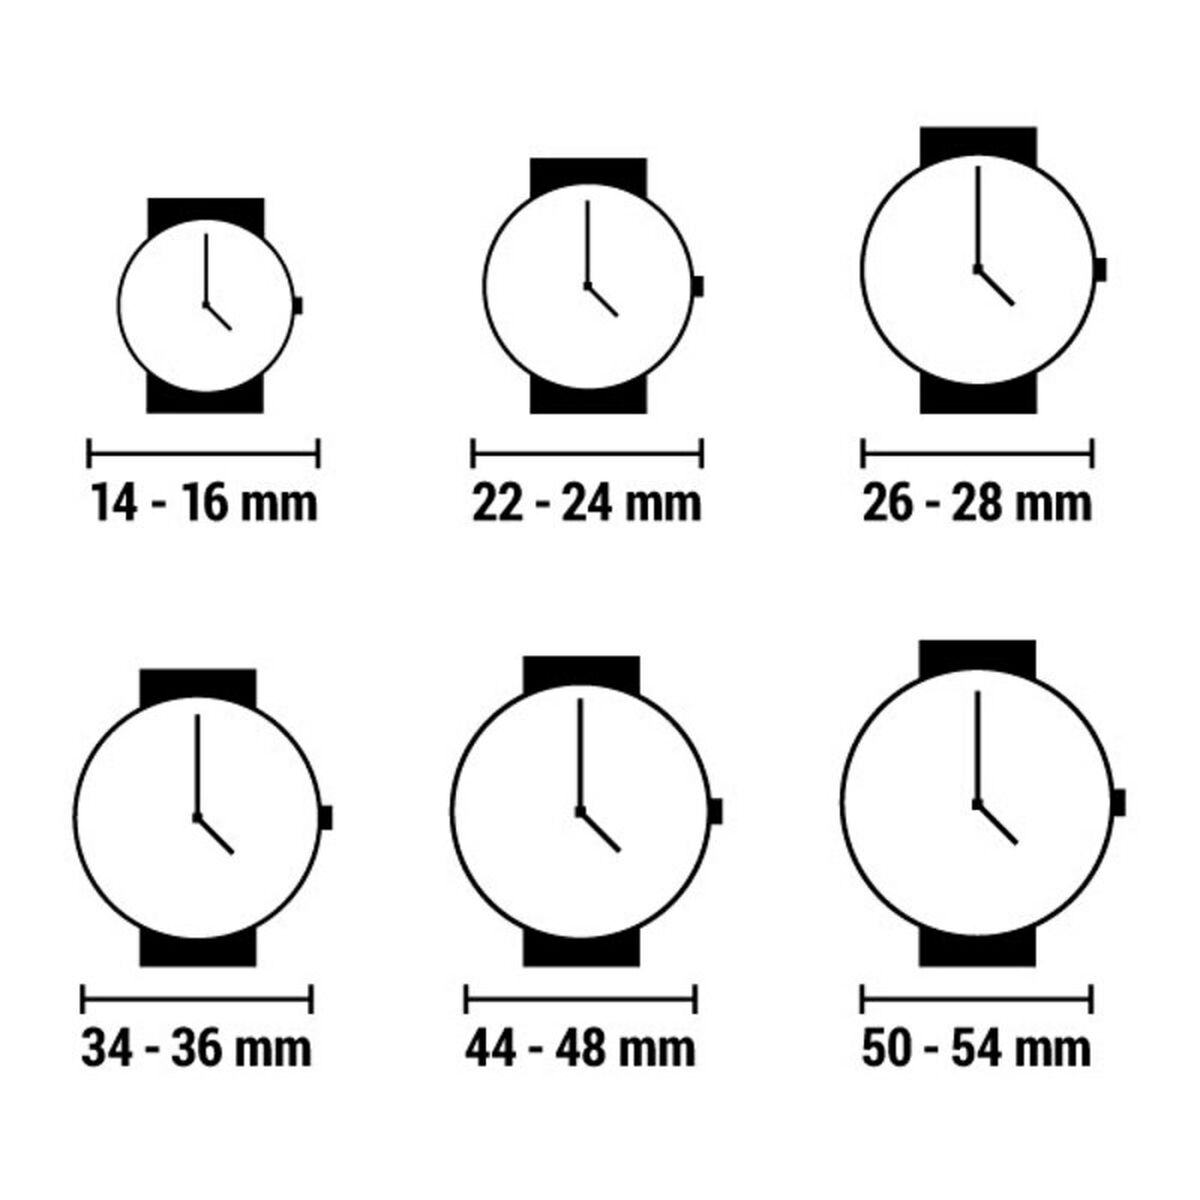 Horloge Dames Guess W0149L6 (Ø 39 mm)